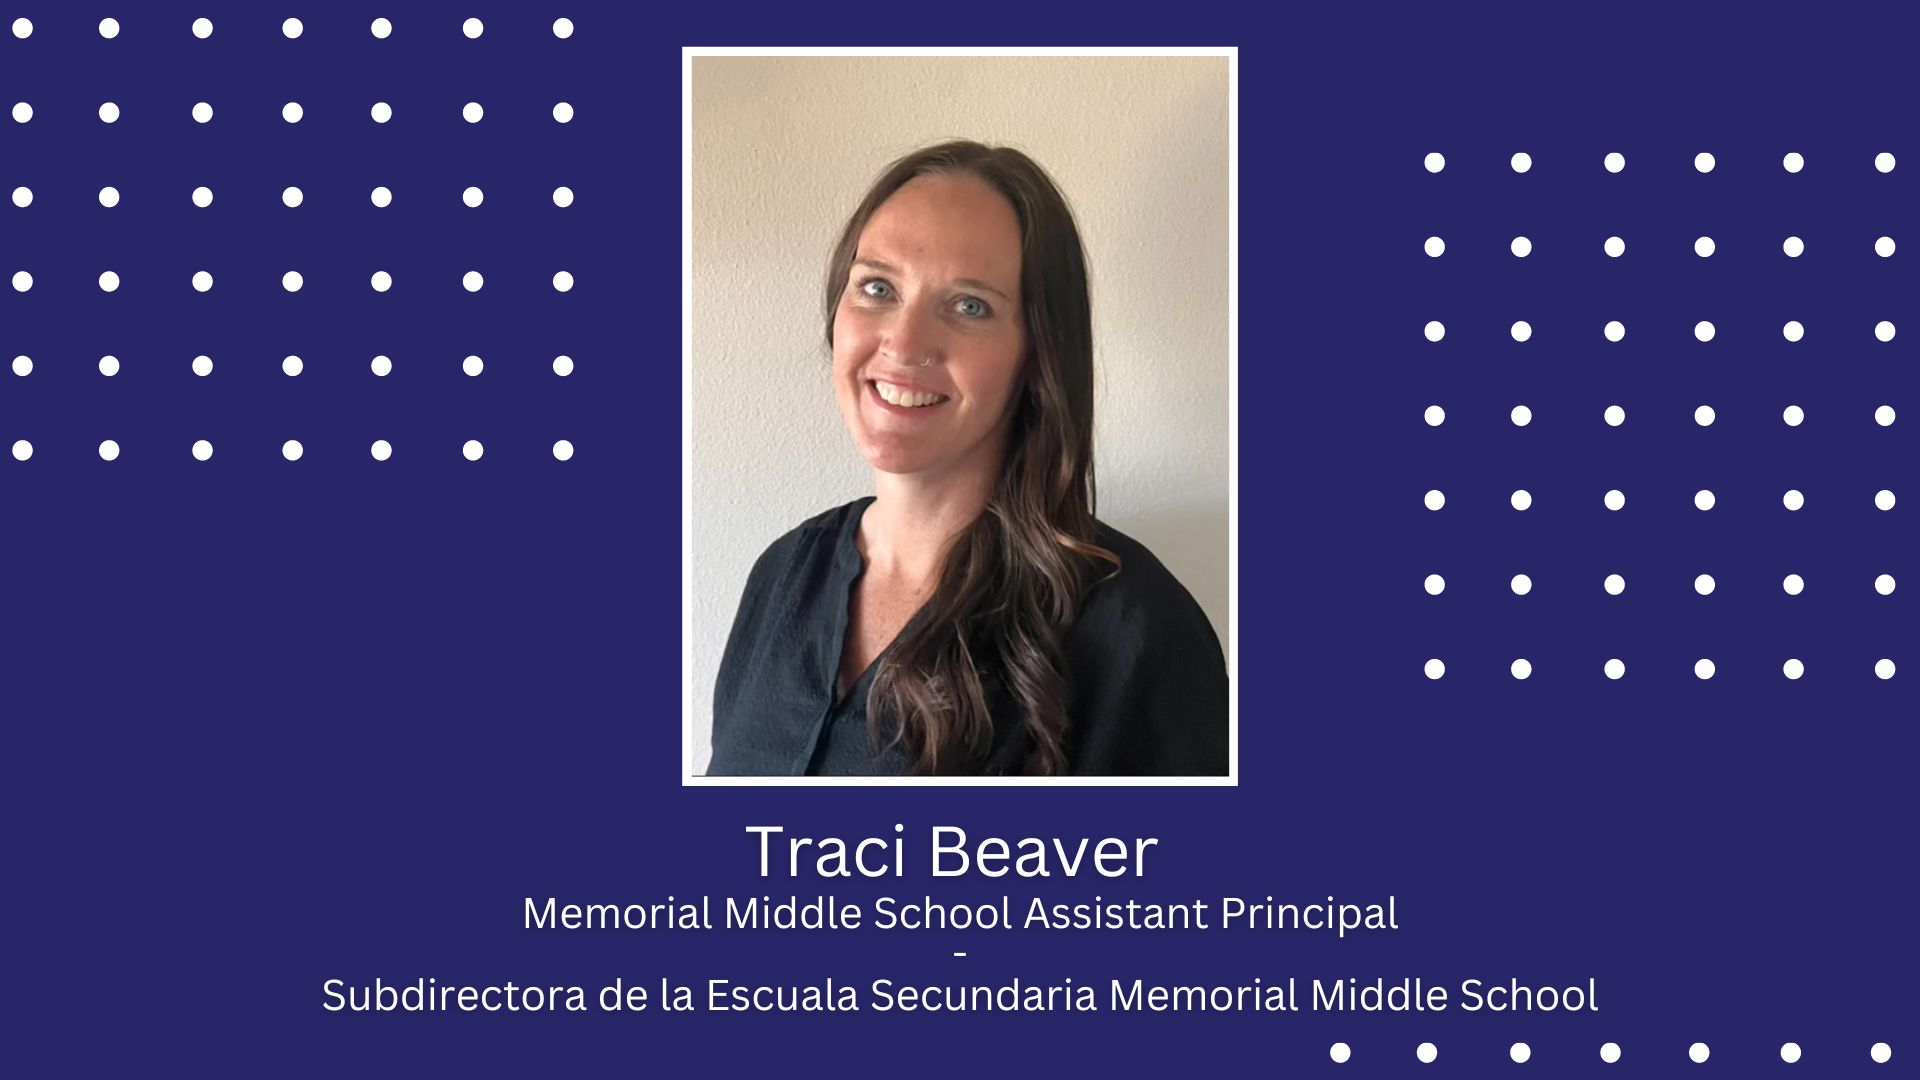 Memorial Middle School welcomes Traci Beaver as new Assistant Principal / Secundaria Memorial Middle School le da la bienvenida a la Sra. Traci Beaver como nueva Subdirectora